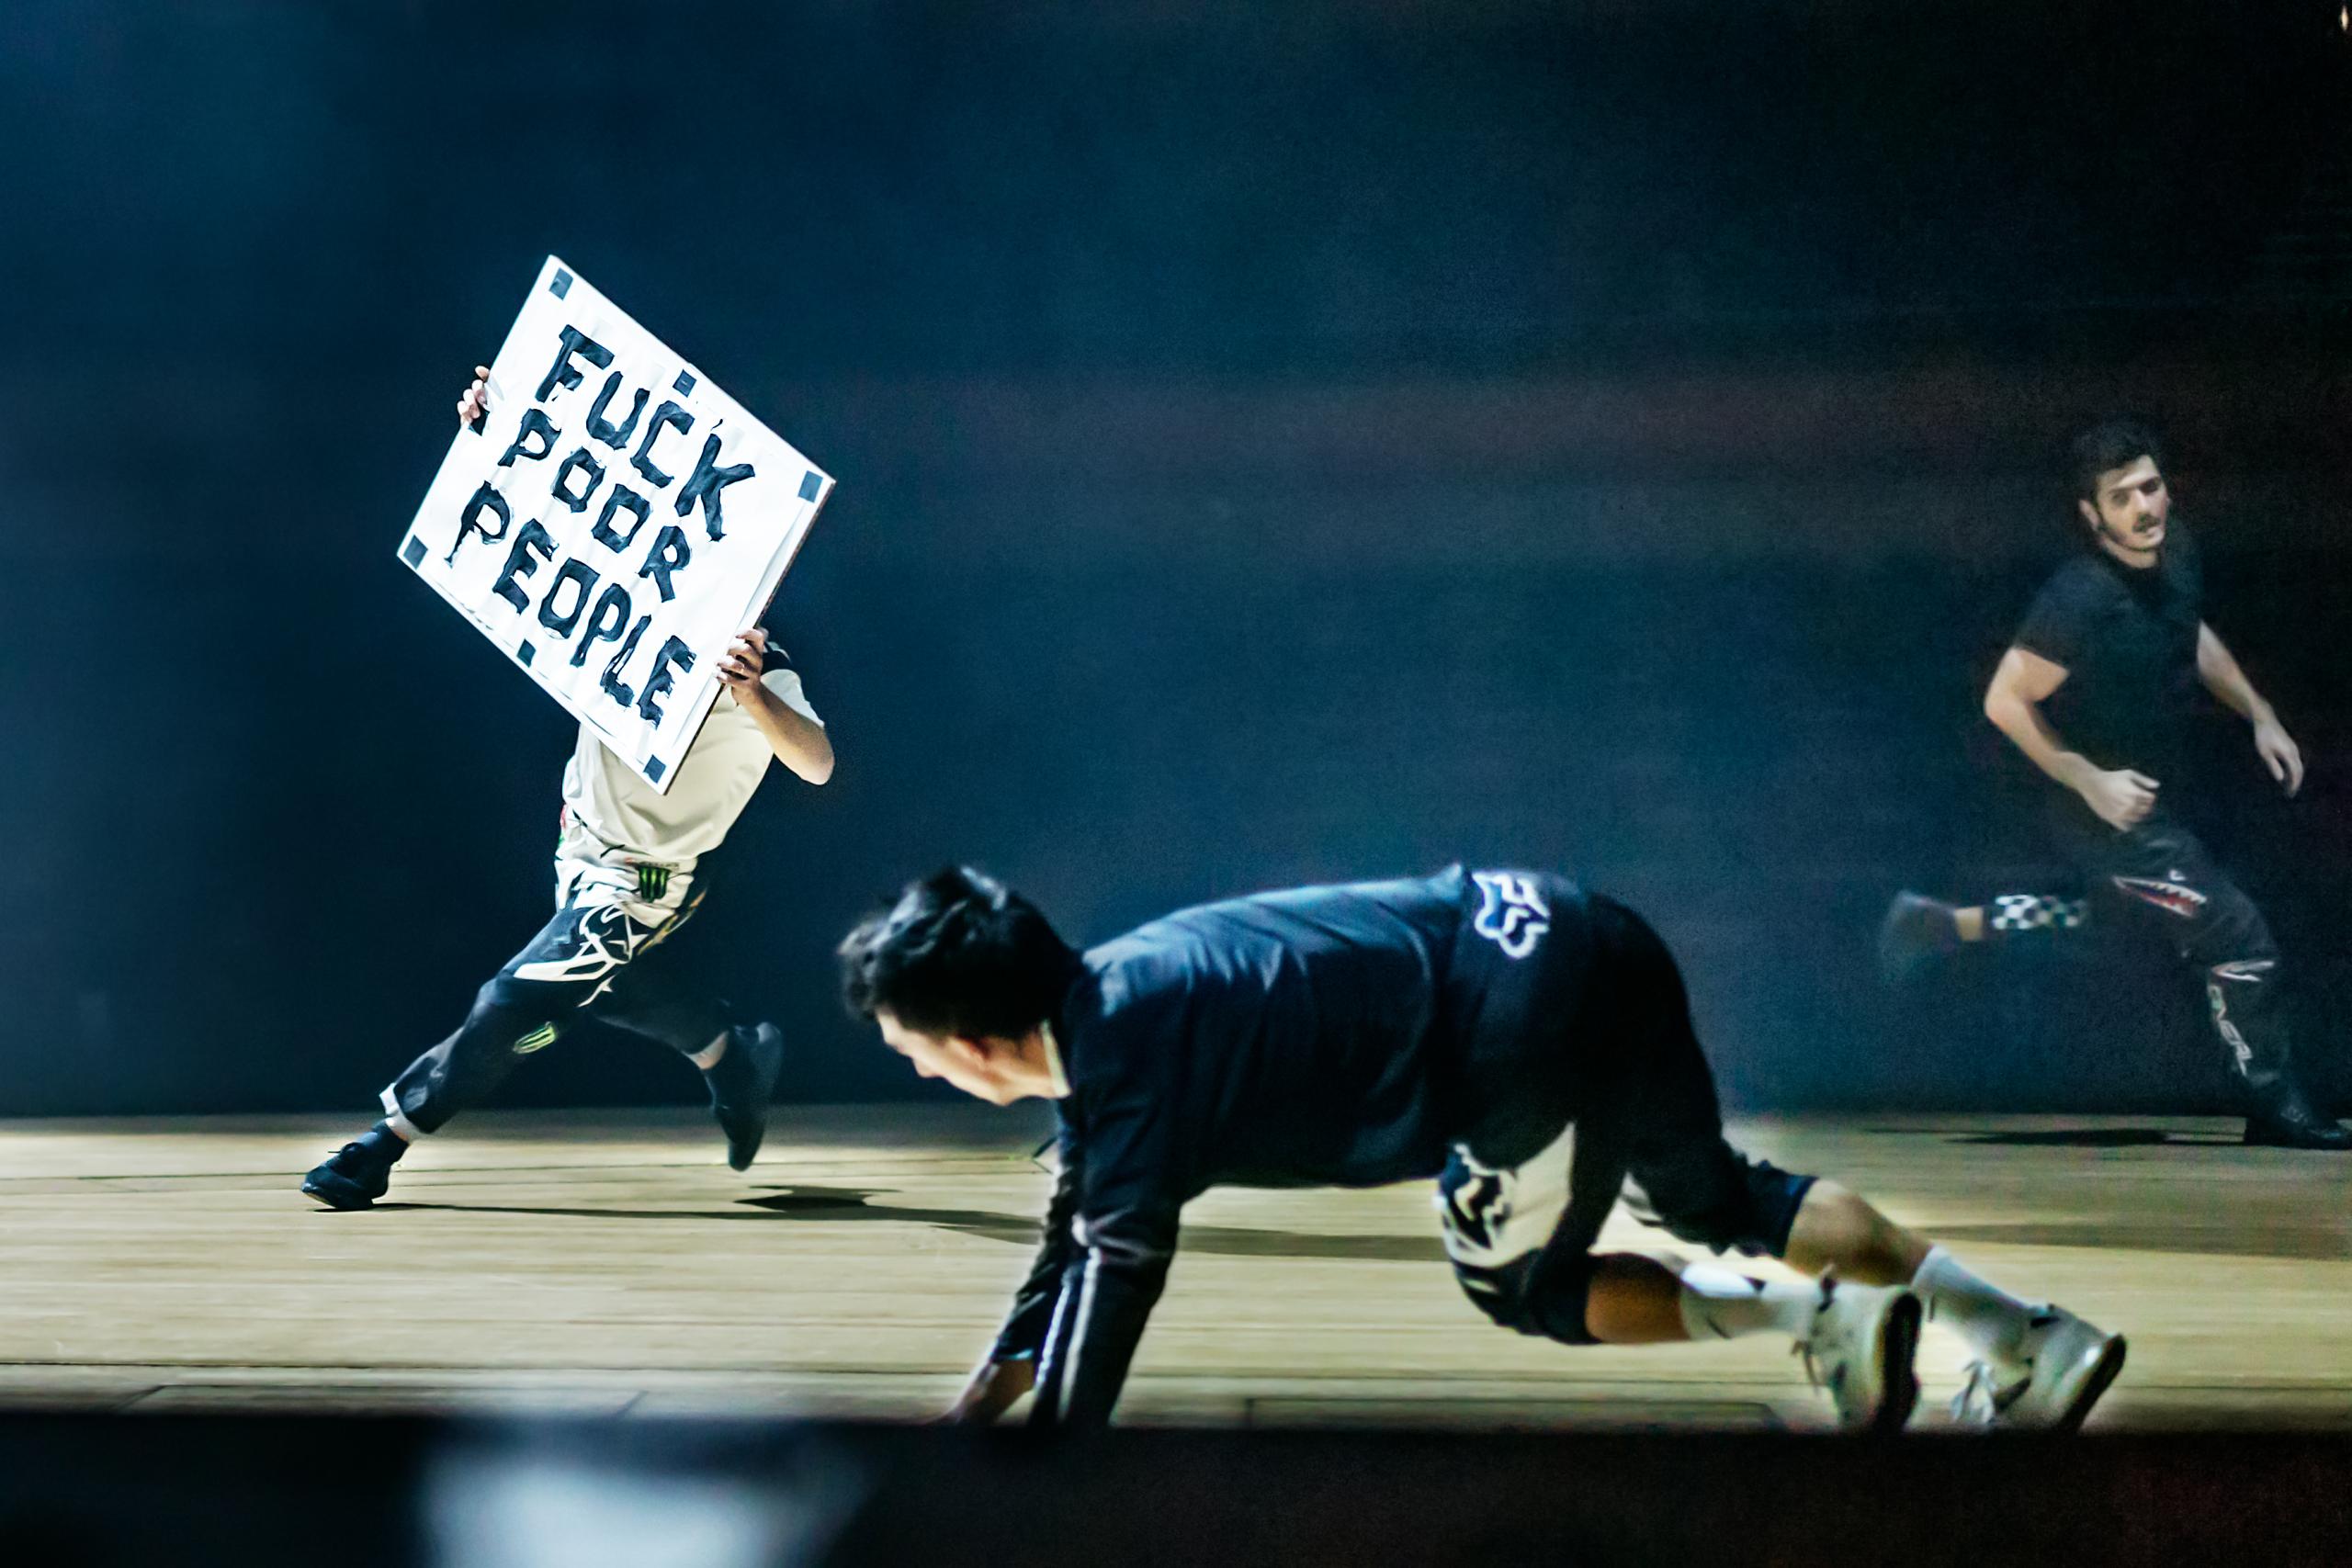 Eine Bühne mit dunklem Hintergrund. Darauf drei Männer die rennen. Einer trägt ein Schild mit der Aufschrift "Fuck Poor People"